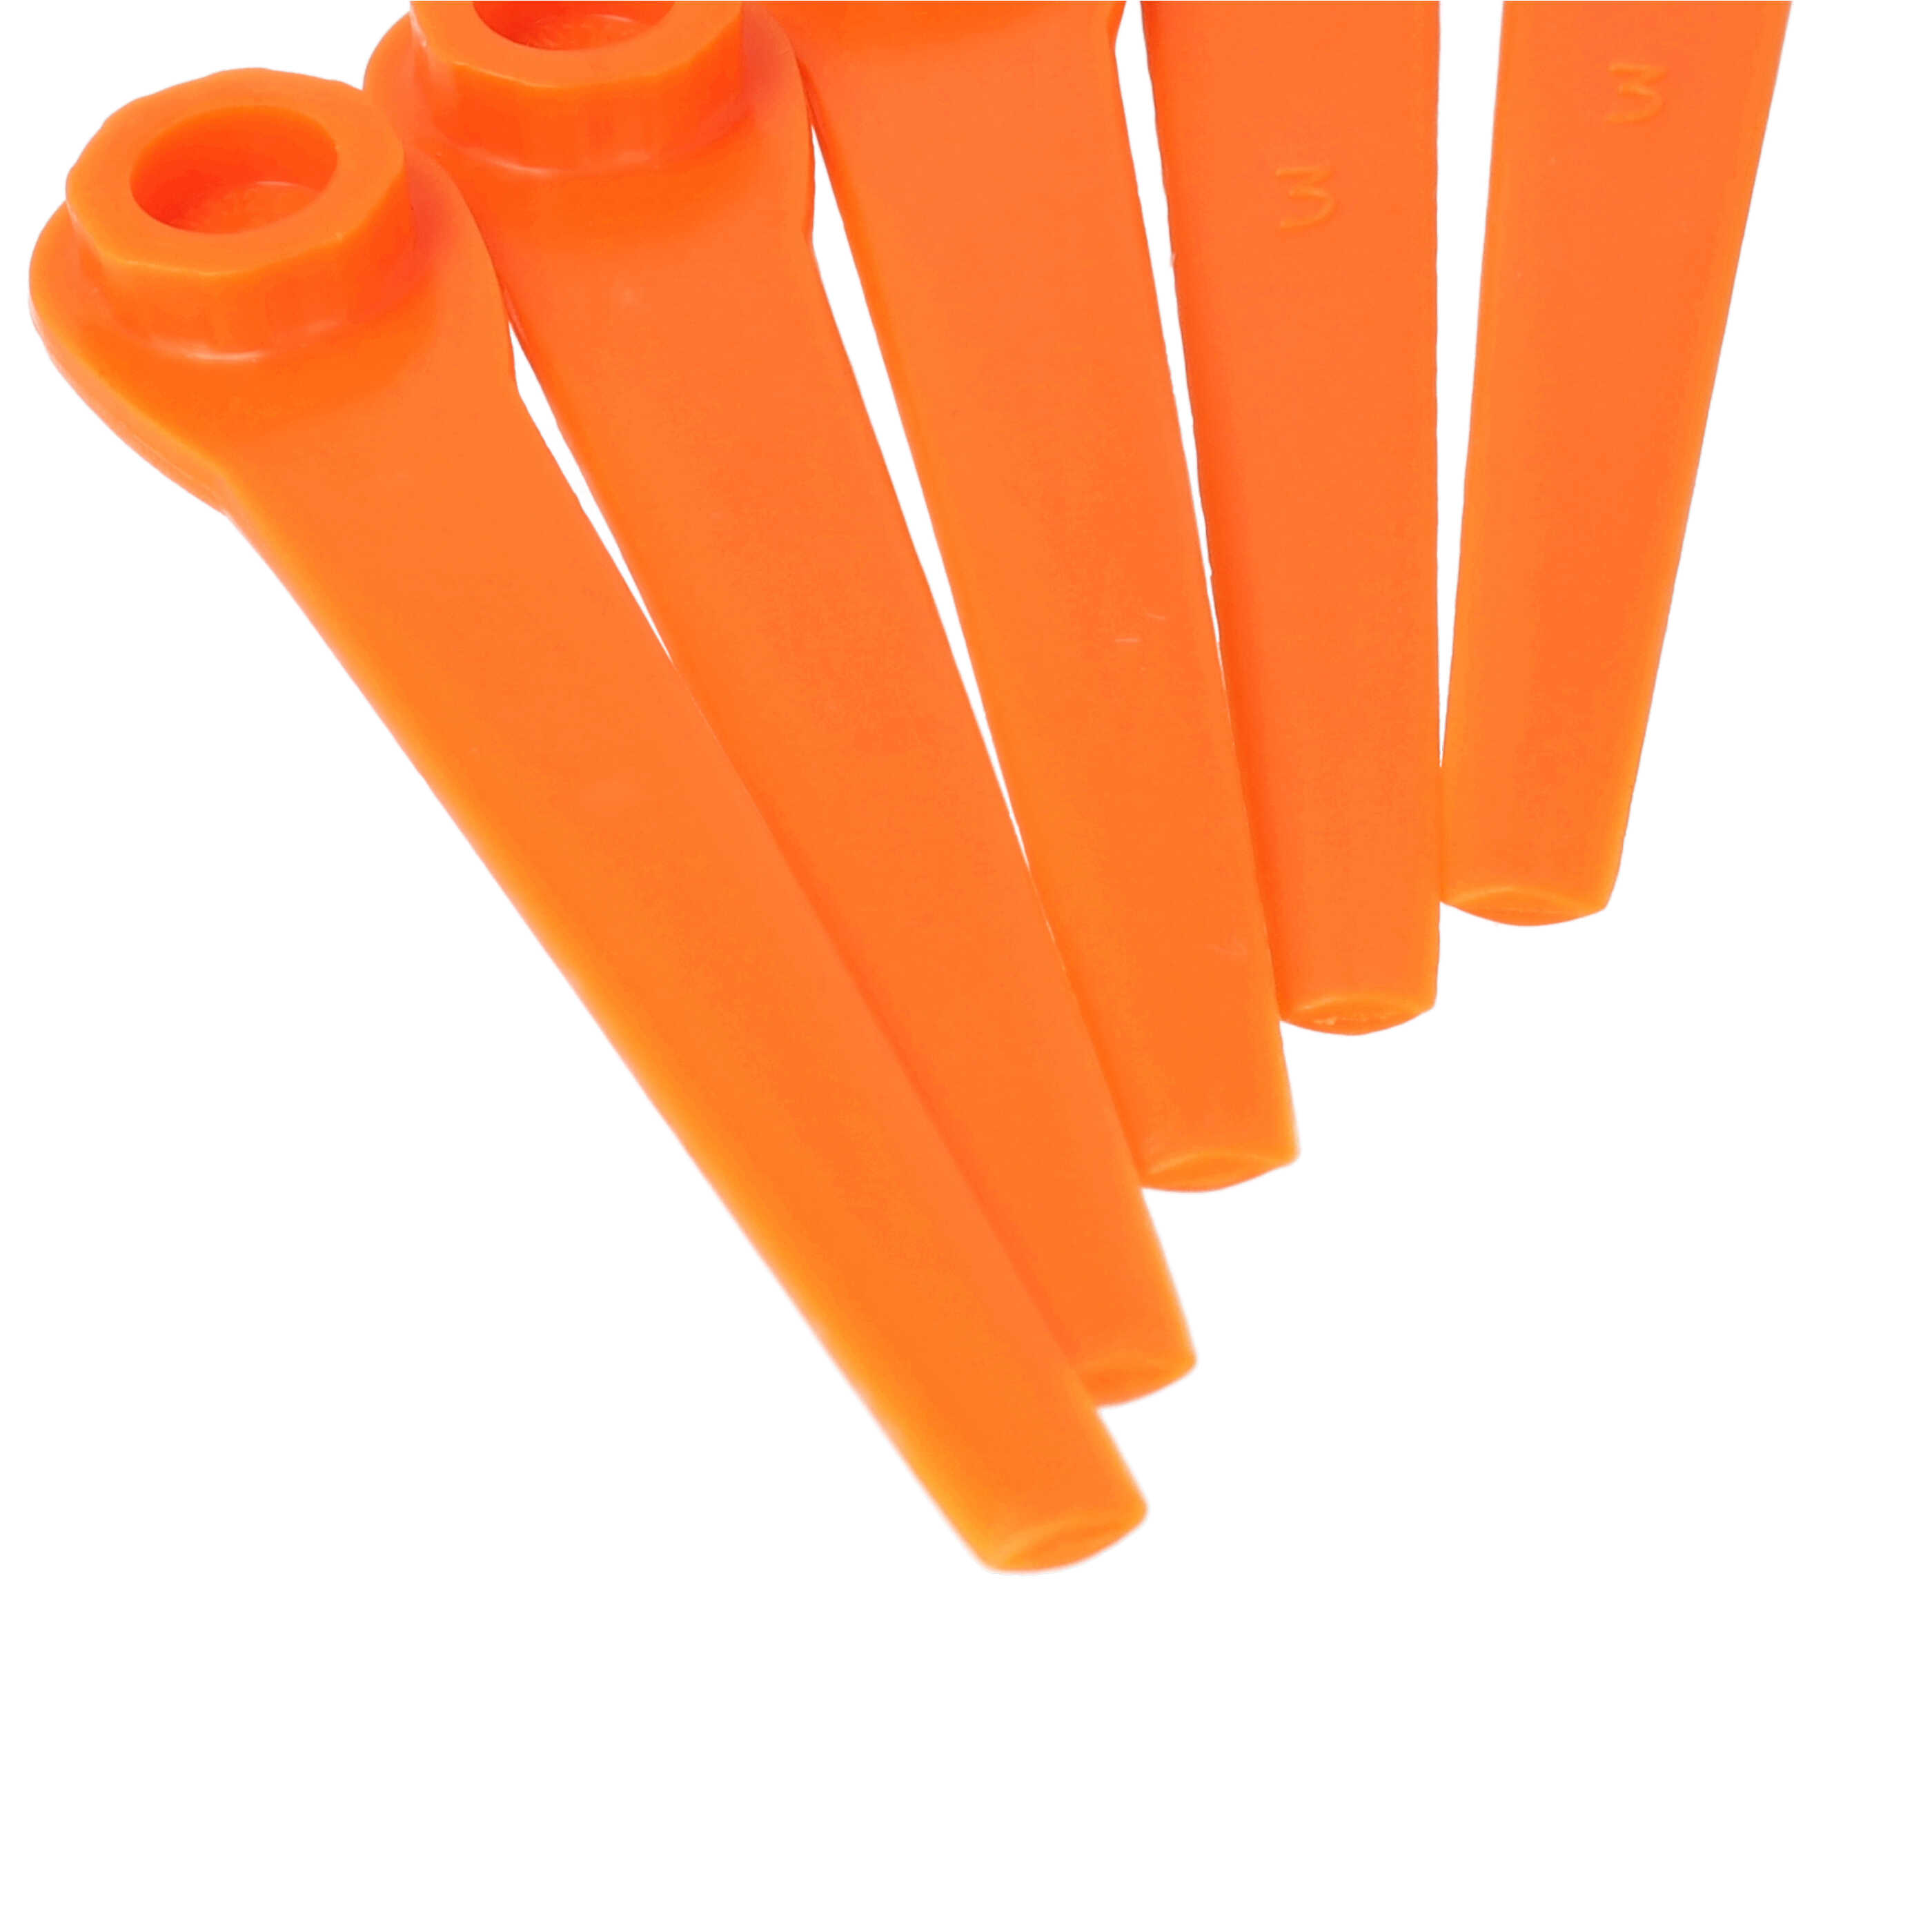 20x Lames remplace Gardena RotorCut 5368-20 pour débroussailleuse – Couteaux plastique, Orange